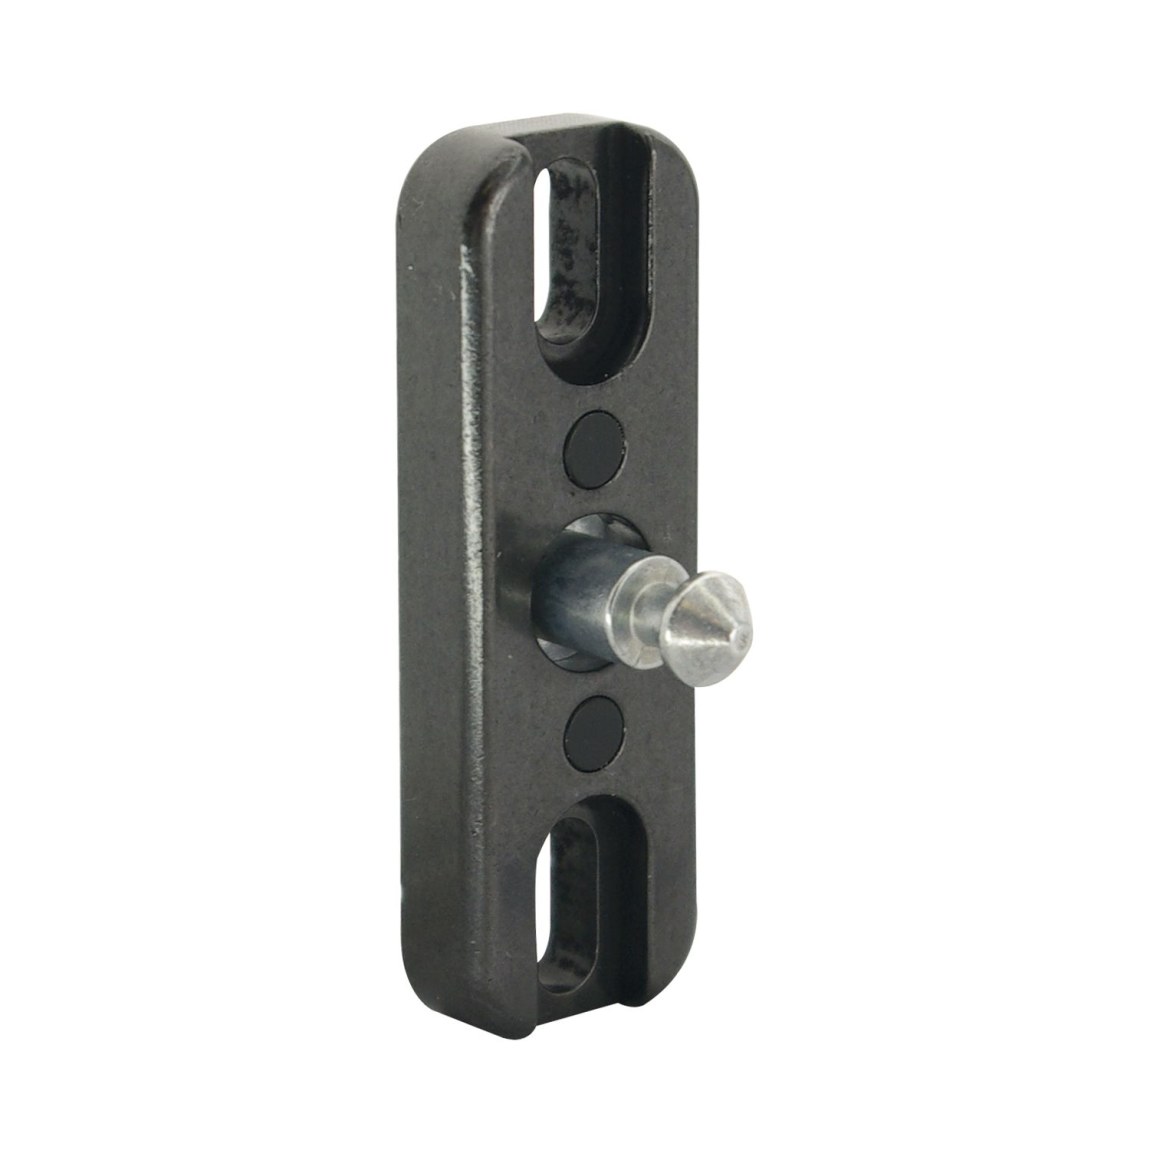 SOLO přední uzamykací díl pro posuvné dveře, ocel/plast černý